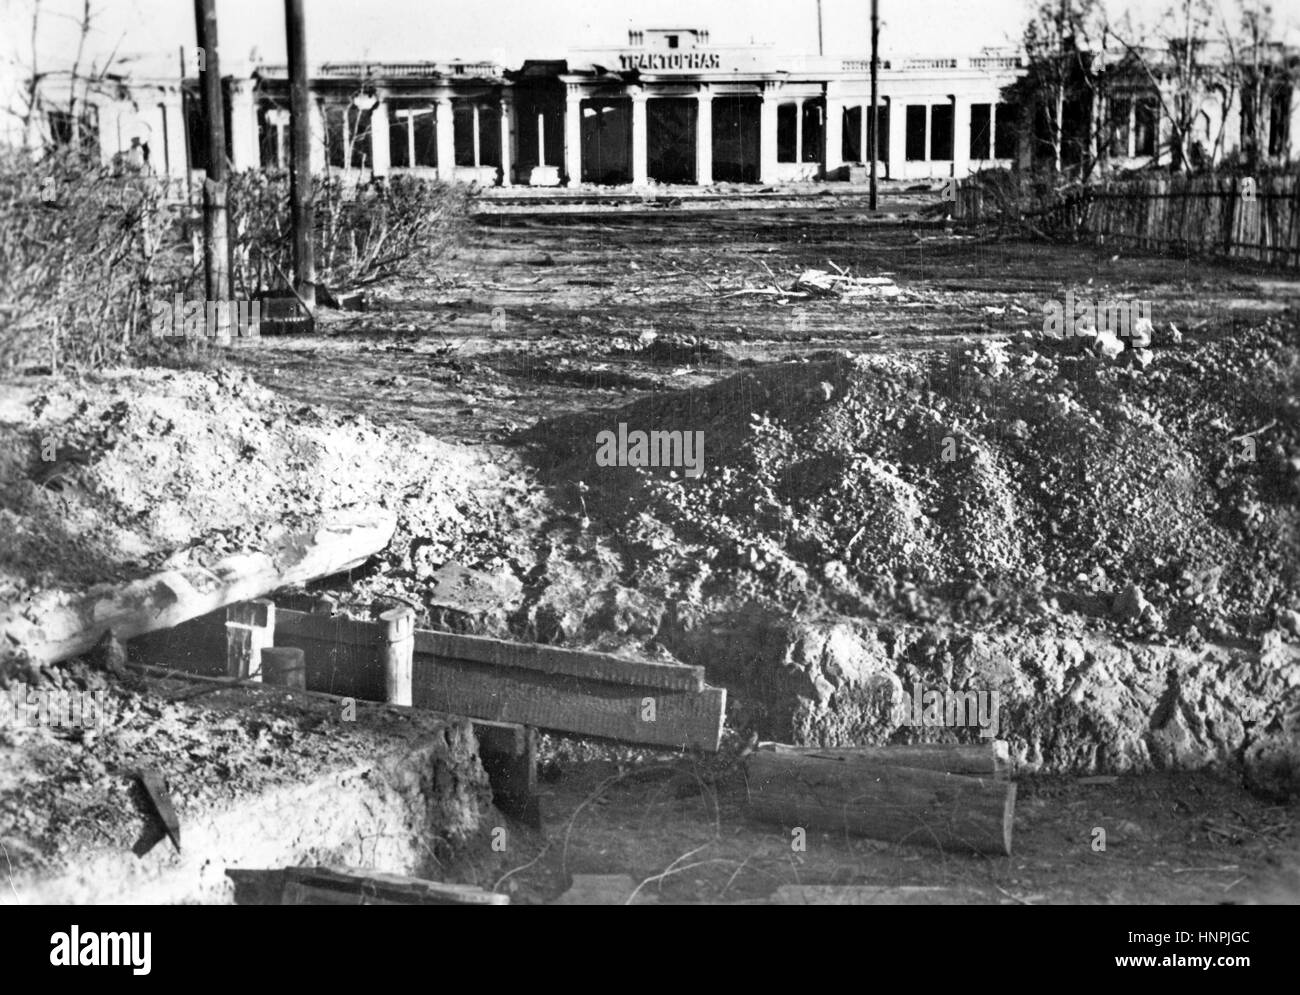 Die NS-Propaganda-Bild zeigt einen Bunker vor der bitter umkämpften "Dzierzynski" Traktor und Tank-Fabrik im Norden von Stalingrad (heute Volgograd). Aufgenommen im November 1942, nachdem es von der deutschen Wehrmacht erobert wurde. Ein NS-Staat-Reporter hat auf der Rückseite des Bildes auf 07.11.1942, geschrieben "die zerstörte Traktorenfabrik in der Hochburg von Stalingrad. Über diese Fabrik wurde ein erbitterter Kampf gekämpft. Die Bolschewiki hatten umgeben das weitläufige Gelände mit Bunkern und Einbäume, die 10 Meter in den Boden ging, um Eindringen von deutschen Truppen zu verhindern. " Foto: Berline Stockfoto